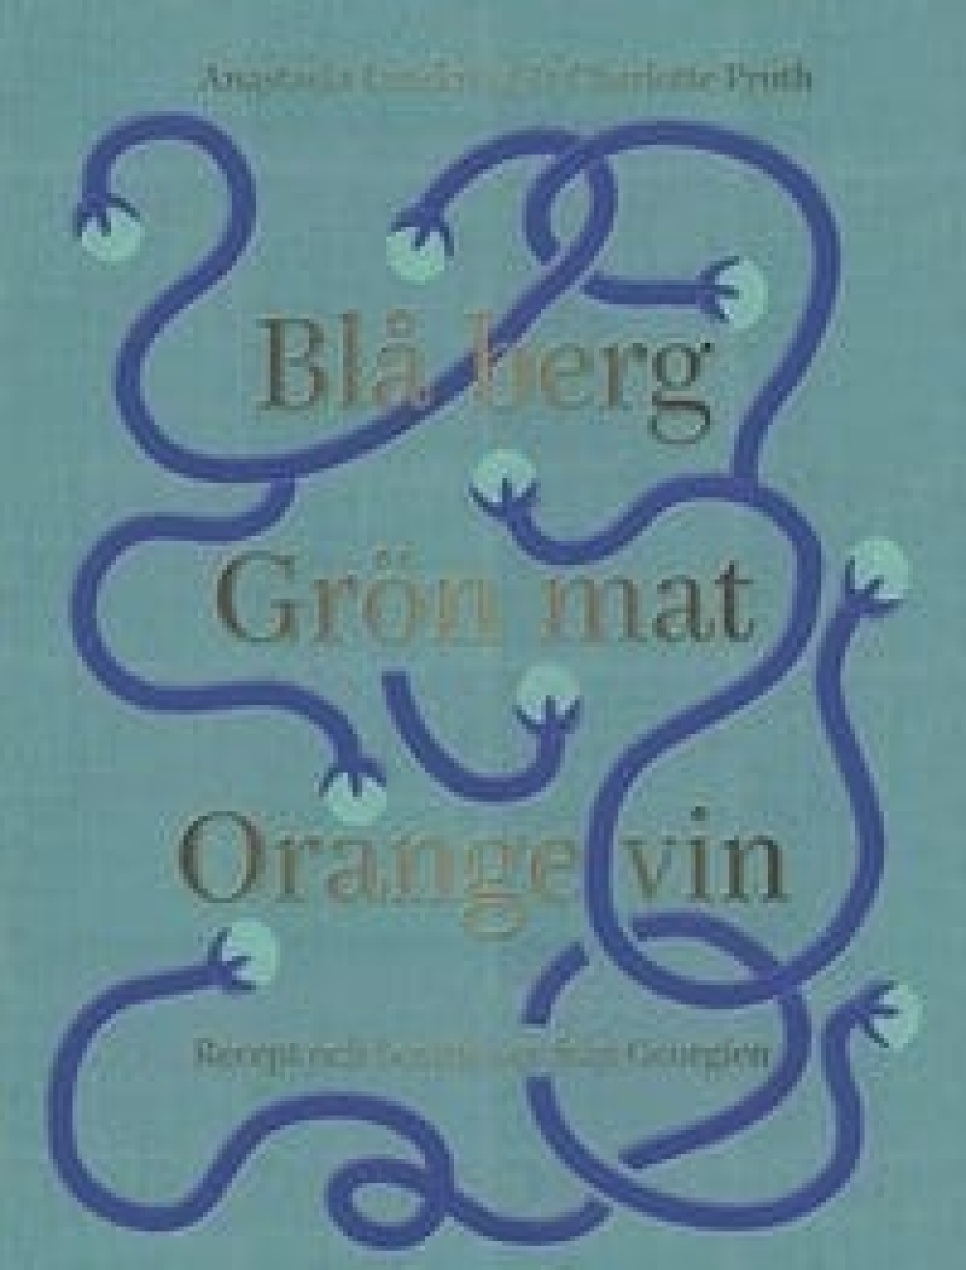 Blå Berg Grön Mat Orange Vin - Anastasia Lundqvist & Charlotte Pruth w grupie Gotowanie / Książki kucharskie / Kuchnie narodowe i regionalne / Europa w The Kitchen Lab (1317-22310)